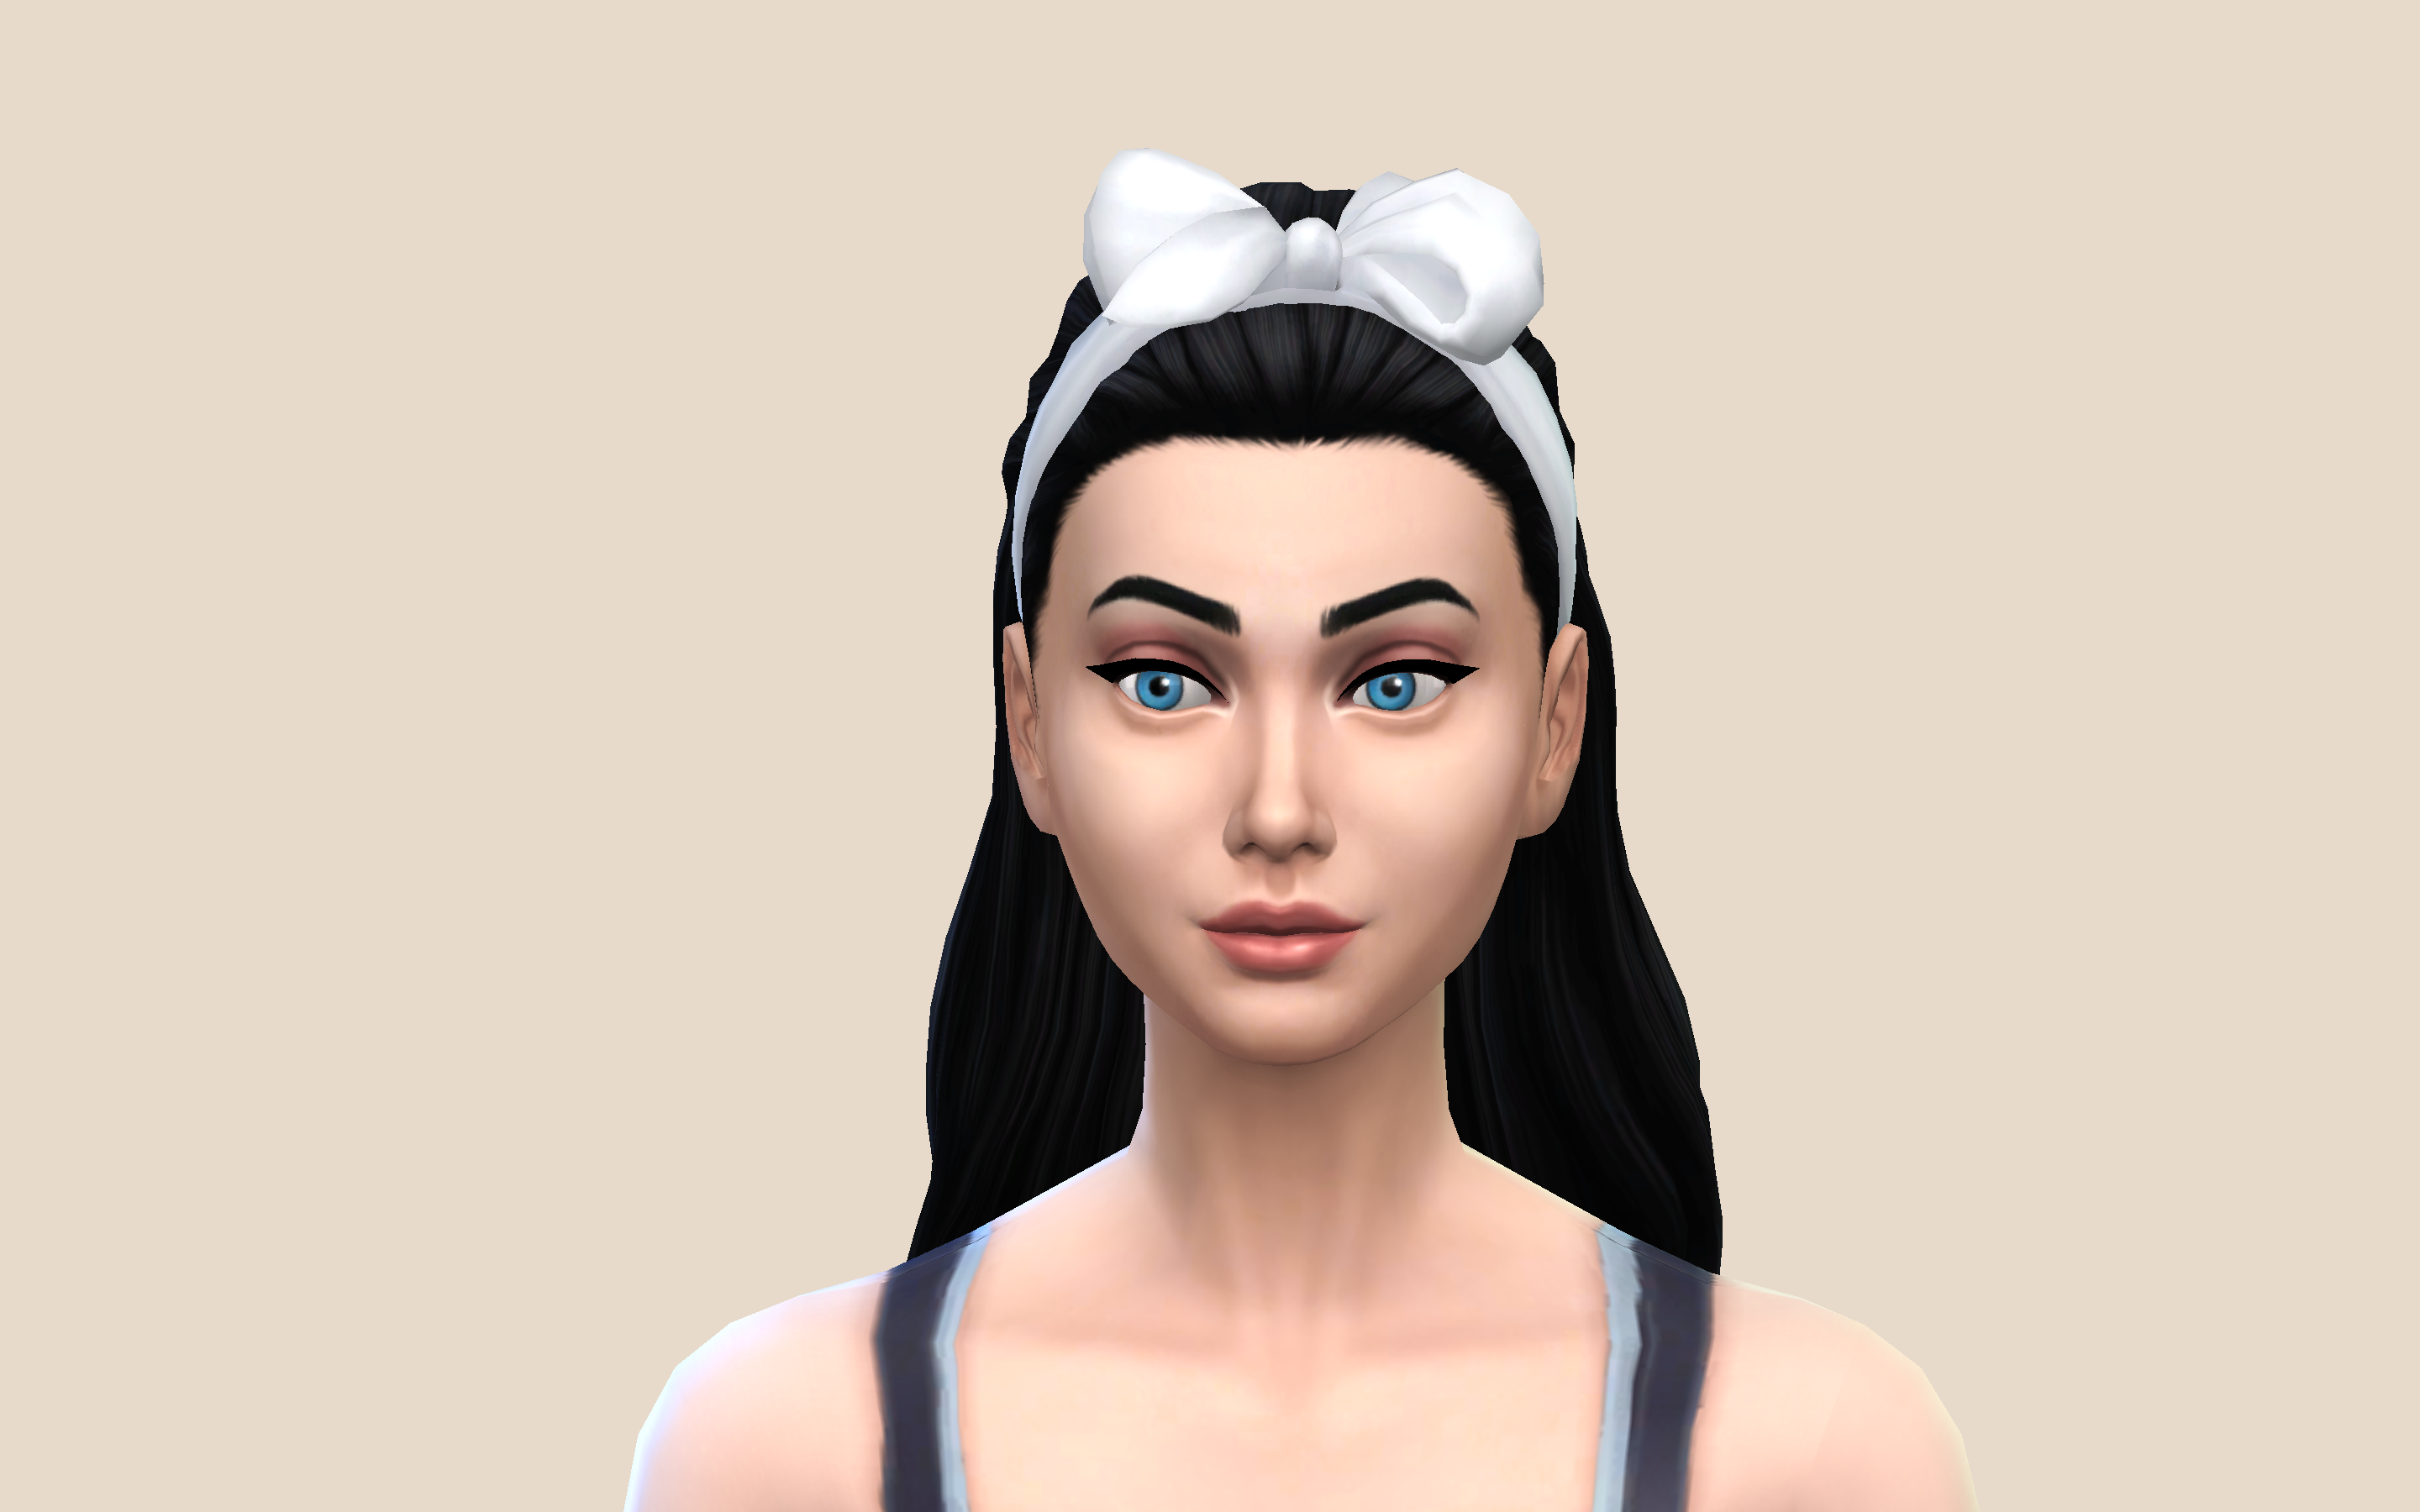 Luna Hair - Aretha - The Sims 4 Create a Sim - CurseForge